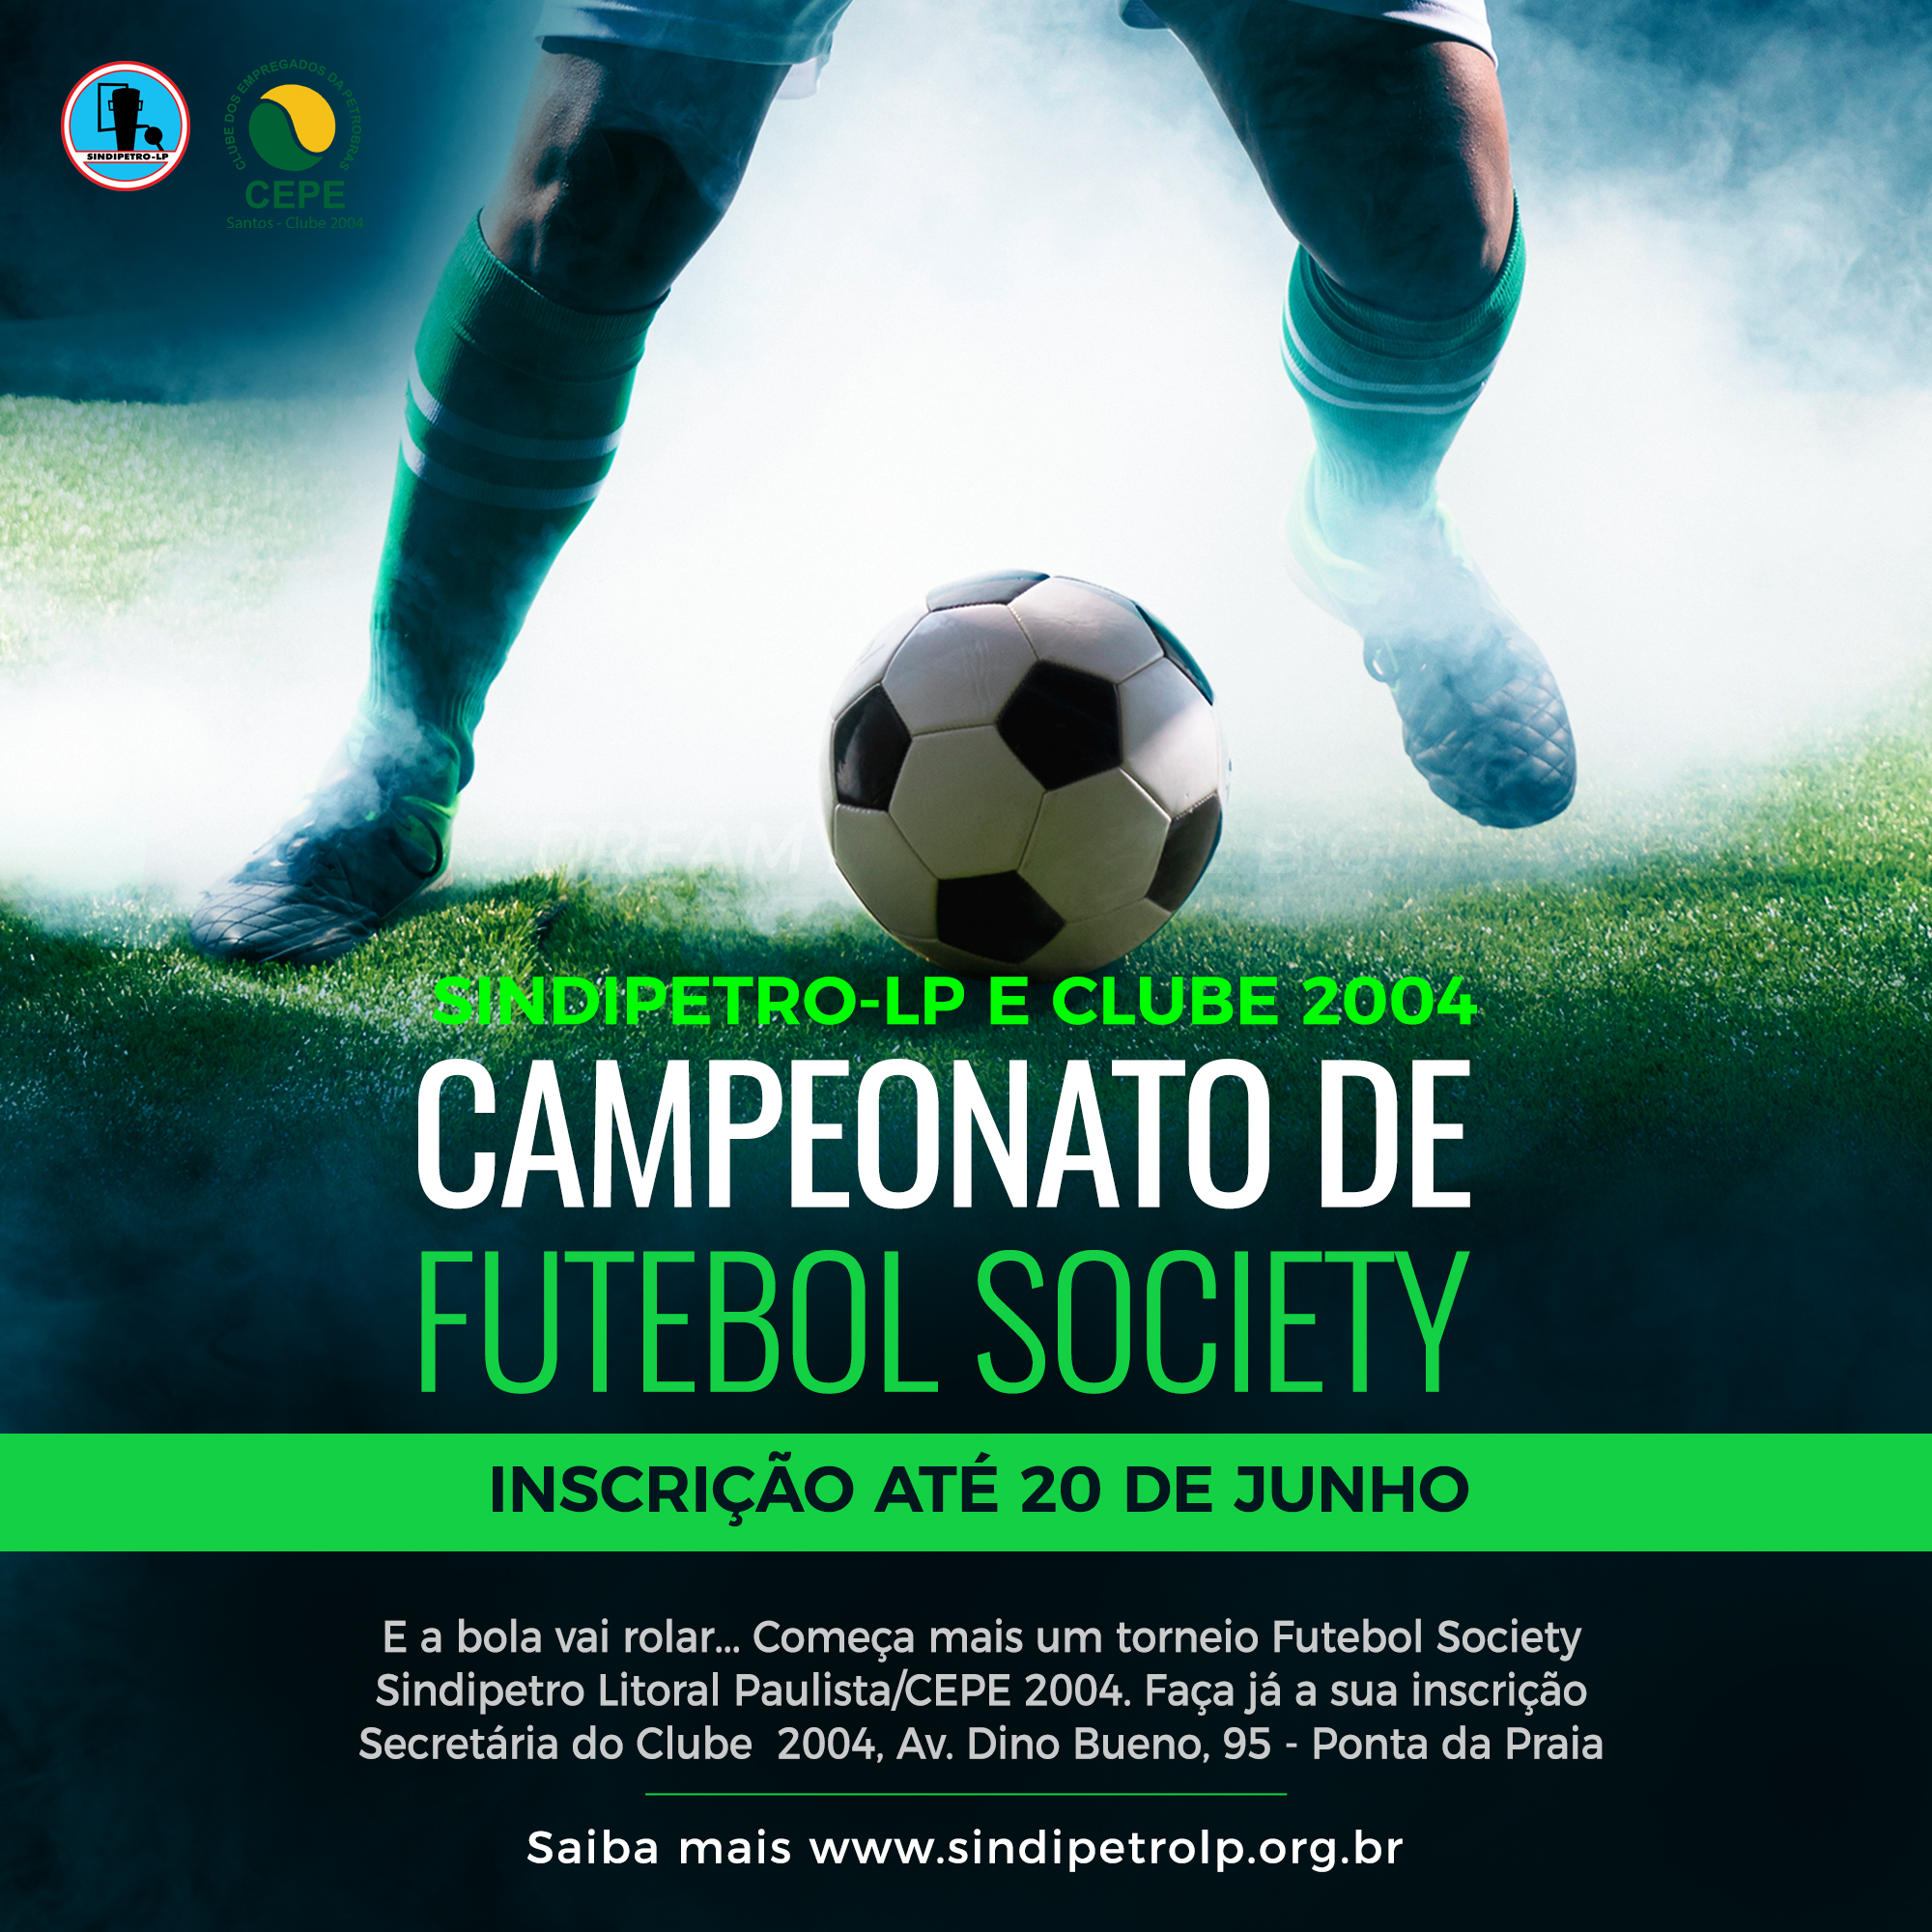 Inscrições para o Campeonato de Futebol Society CEPE 2004/Sindipetro-LP  seguem até o próximo dia 20 de junho 